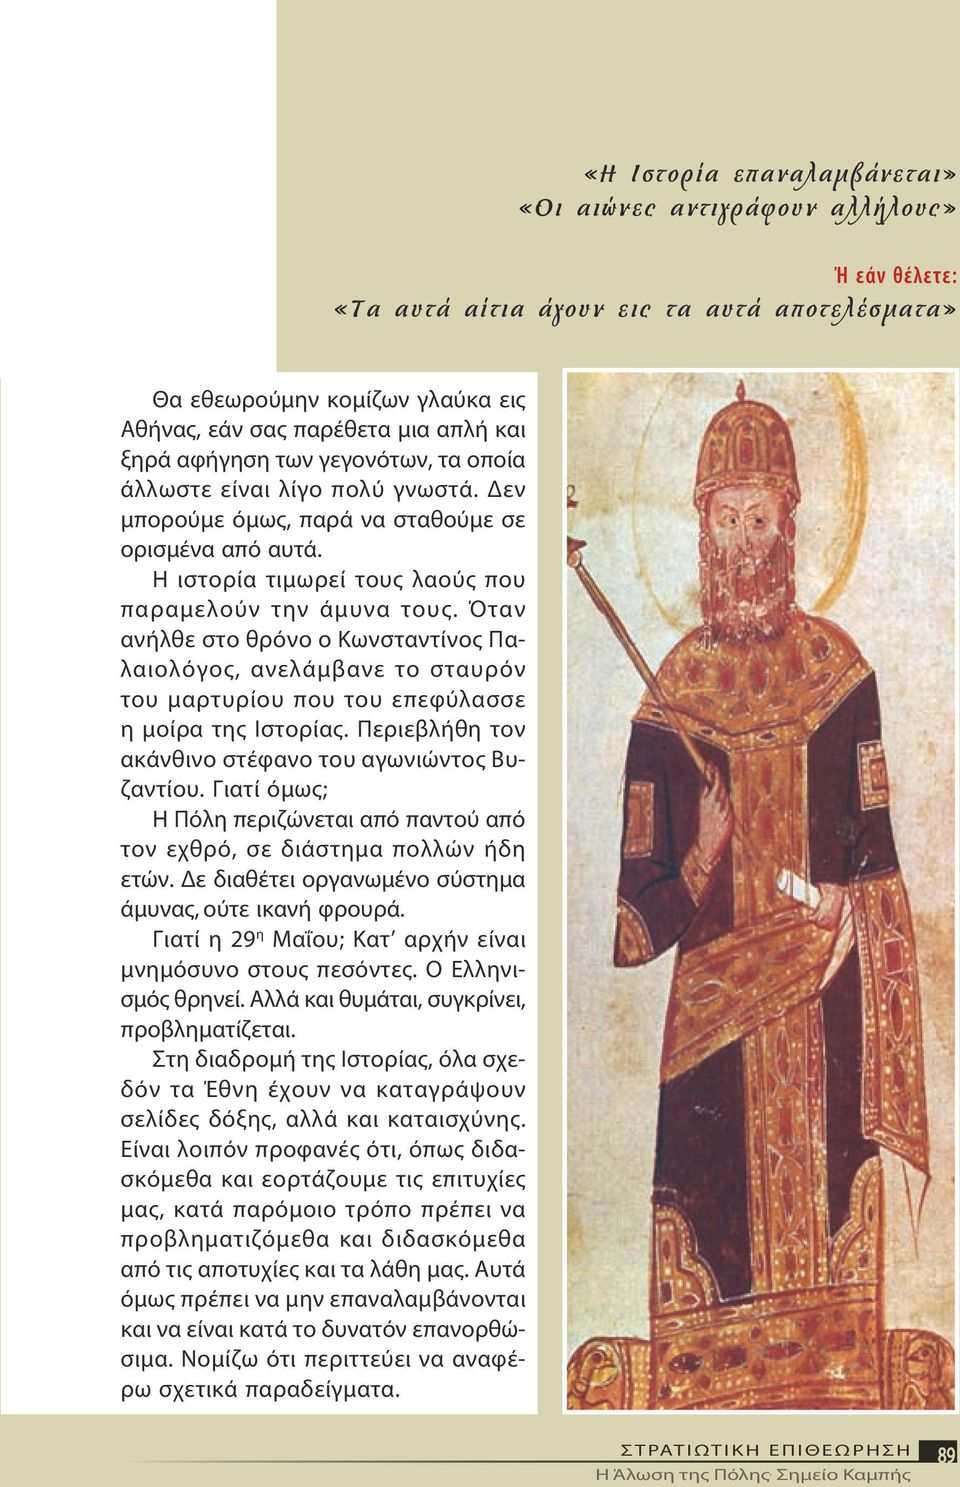 Όταν ανήλθε στο θρόνο ο Κωνσταντίνος Παλαιολόγος, ανελάμβανε το σταυρόν του μαρτυρίου που του επεφύλασσε η μοίρα της Ιστορίας. Περιεβλήθη τον ακάνθινο στέφανο του αγωνιώντος Βυζαντίου.